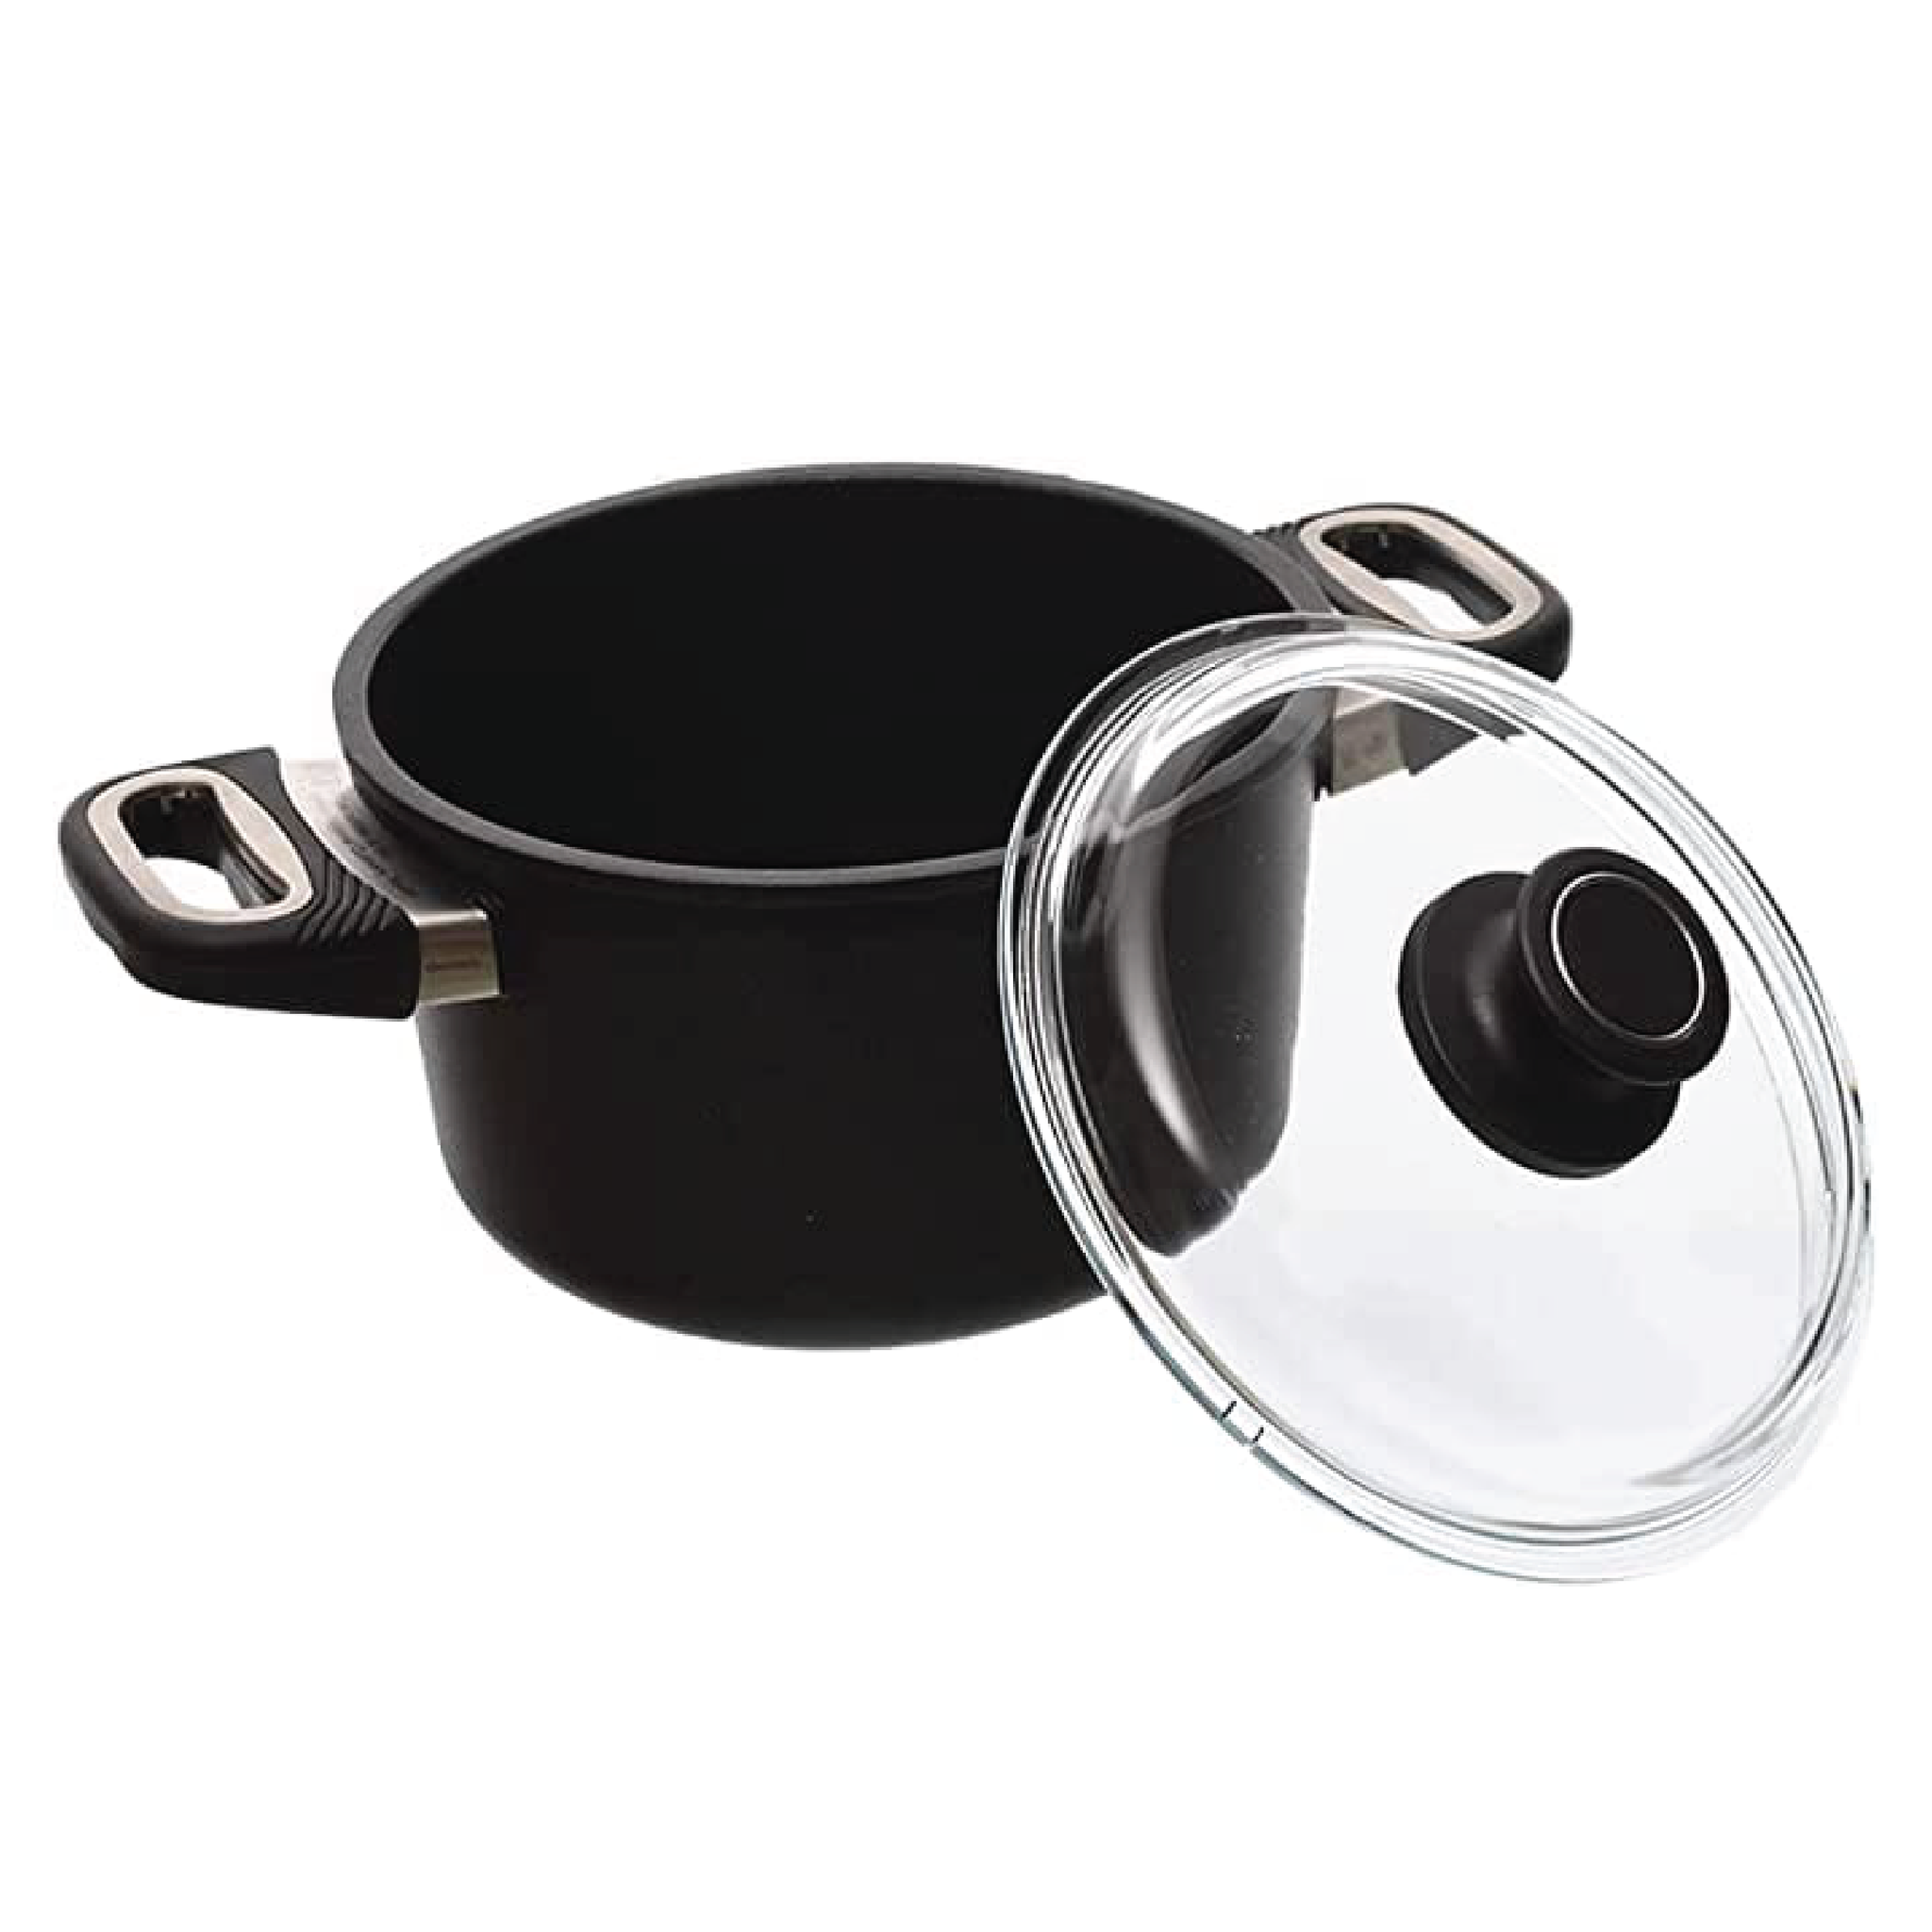 AMT - Black Pot with Glass Lid - Cast Aluminum - 20cm - 440004057